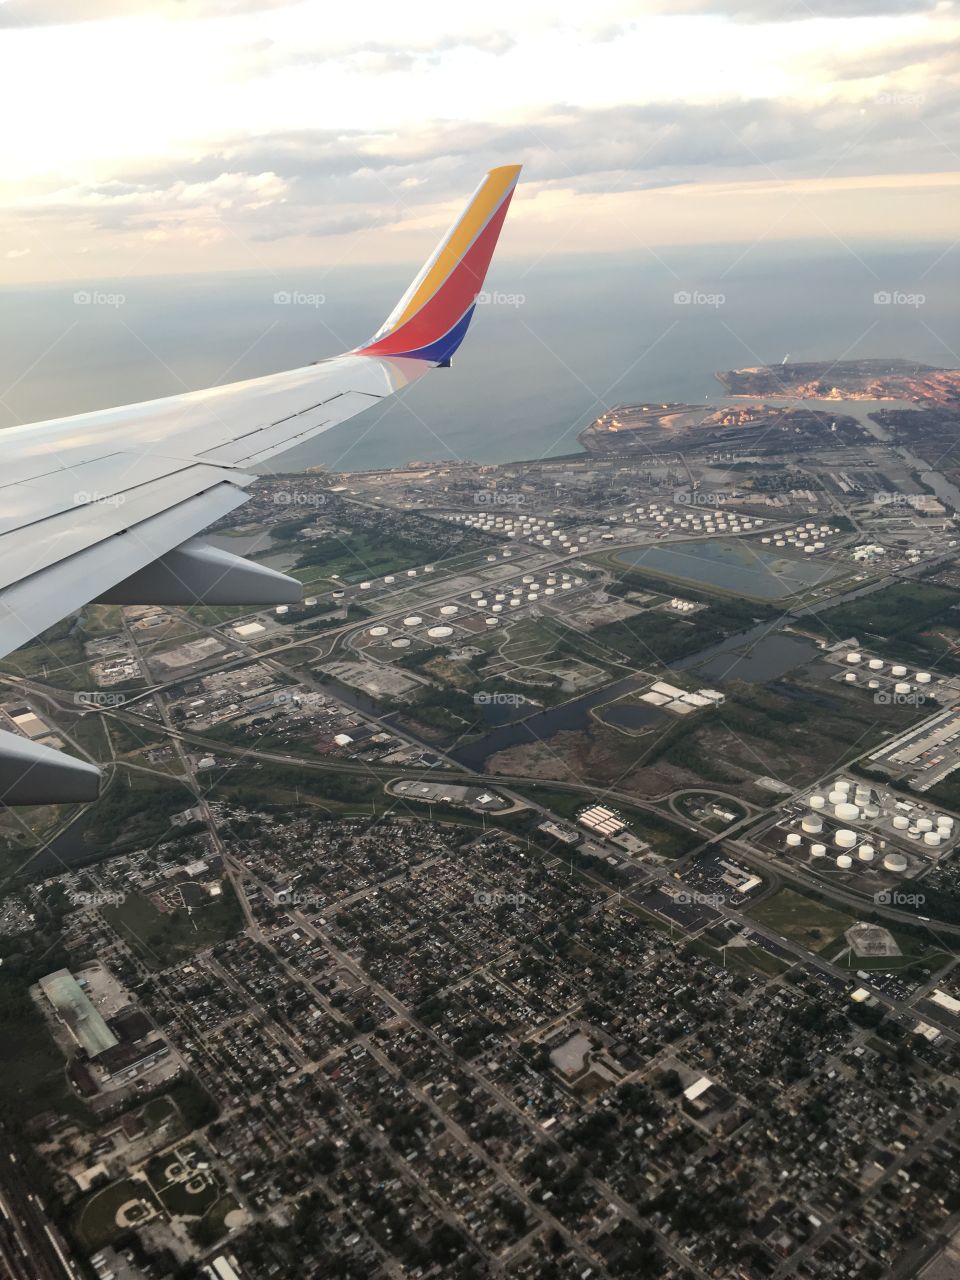 Southwest flight Chicago Illinois 